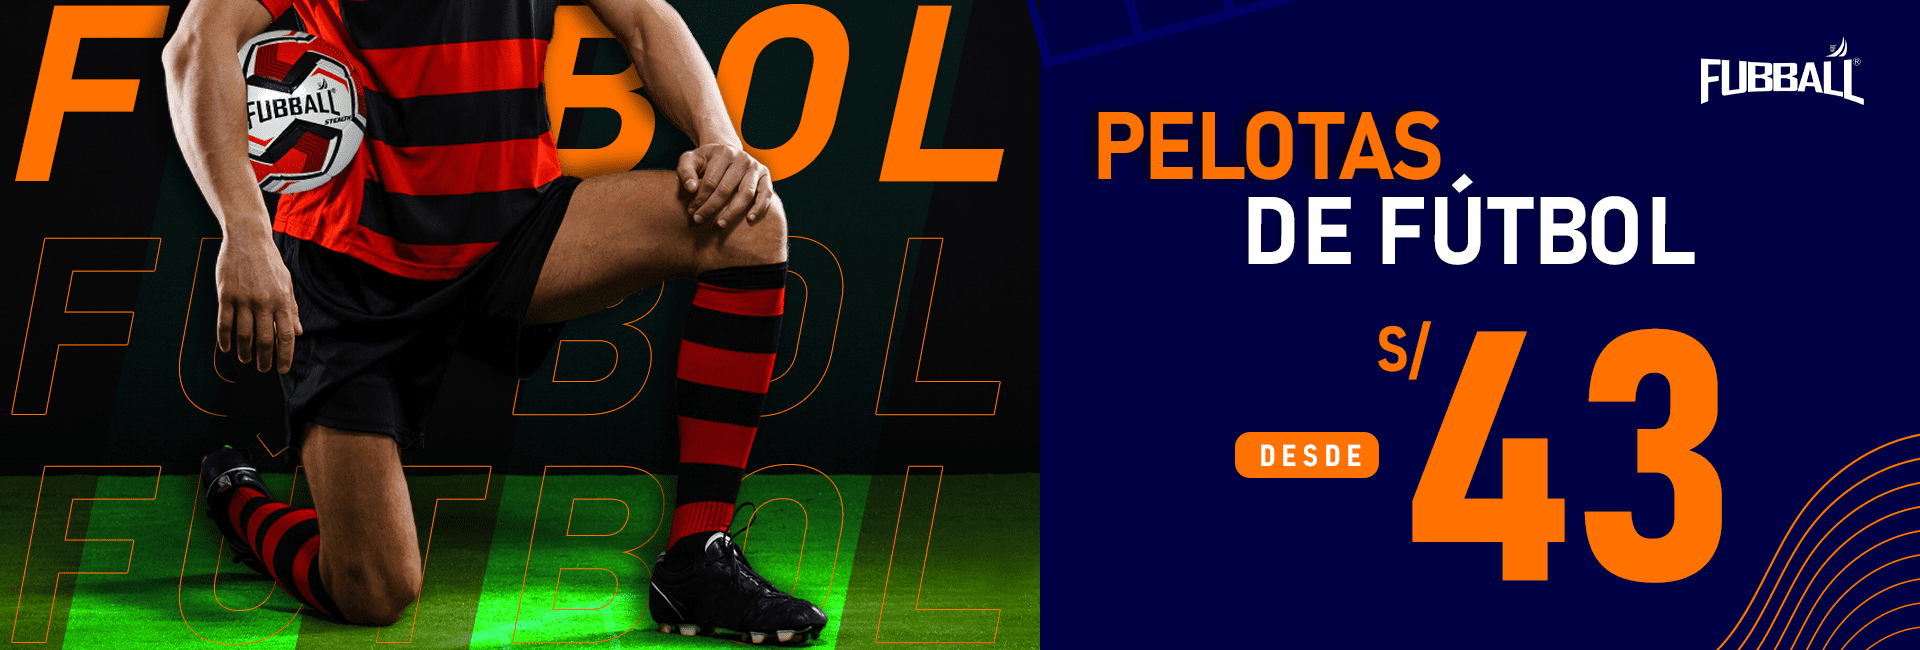 PELOTAS-DESDE-43-SOLES(1)